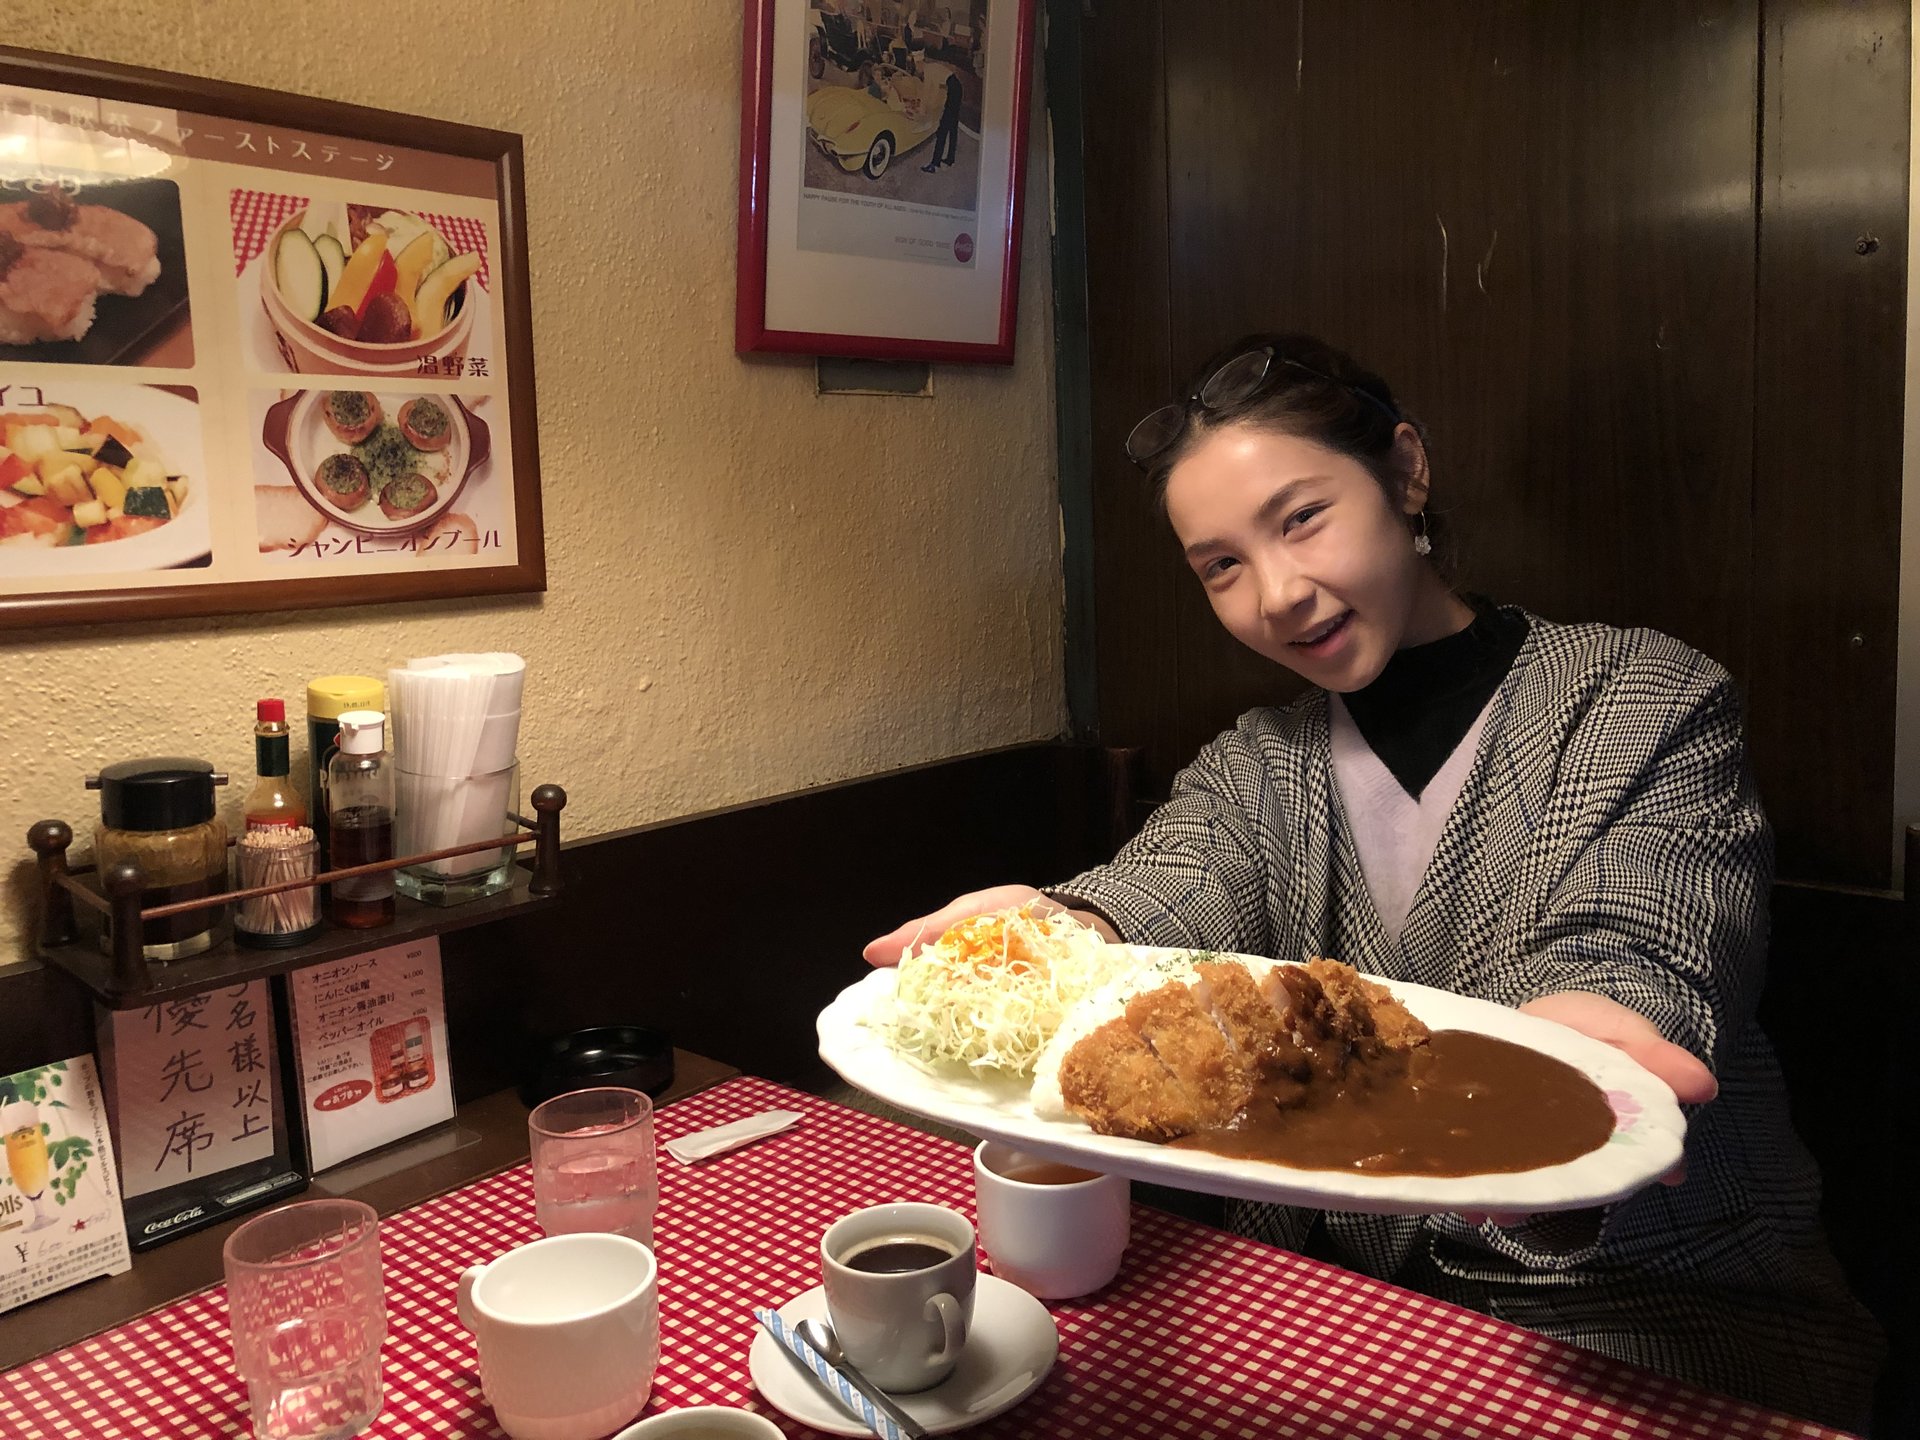 銀座おすすめランチ「あづま」常連も多い♡コスパ高・おいしい老舗洋食店